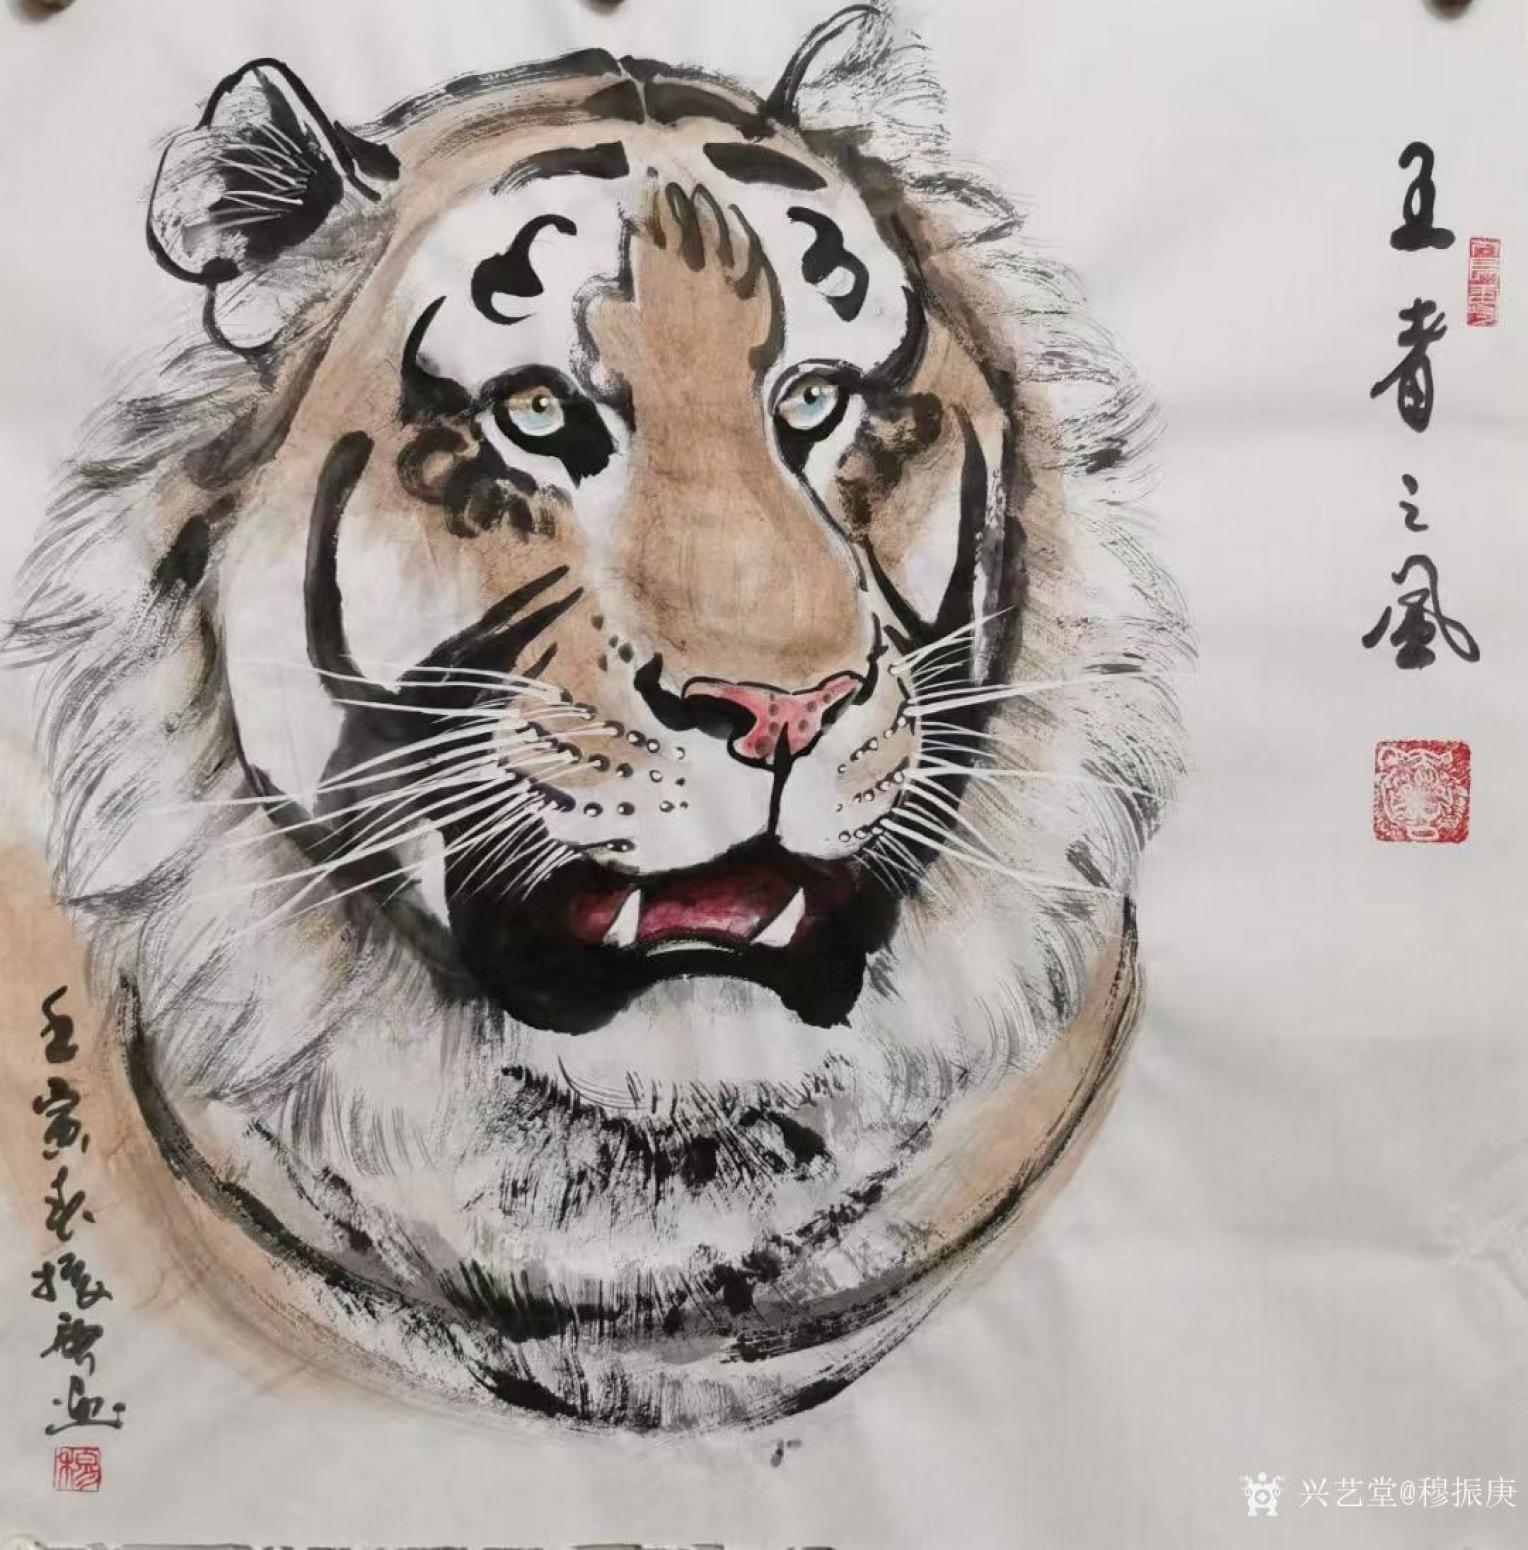 穆振庚国画作品《老虎头-王者之风》